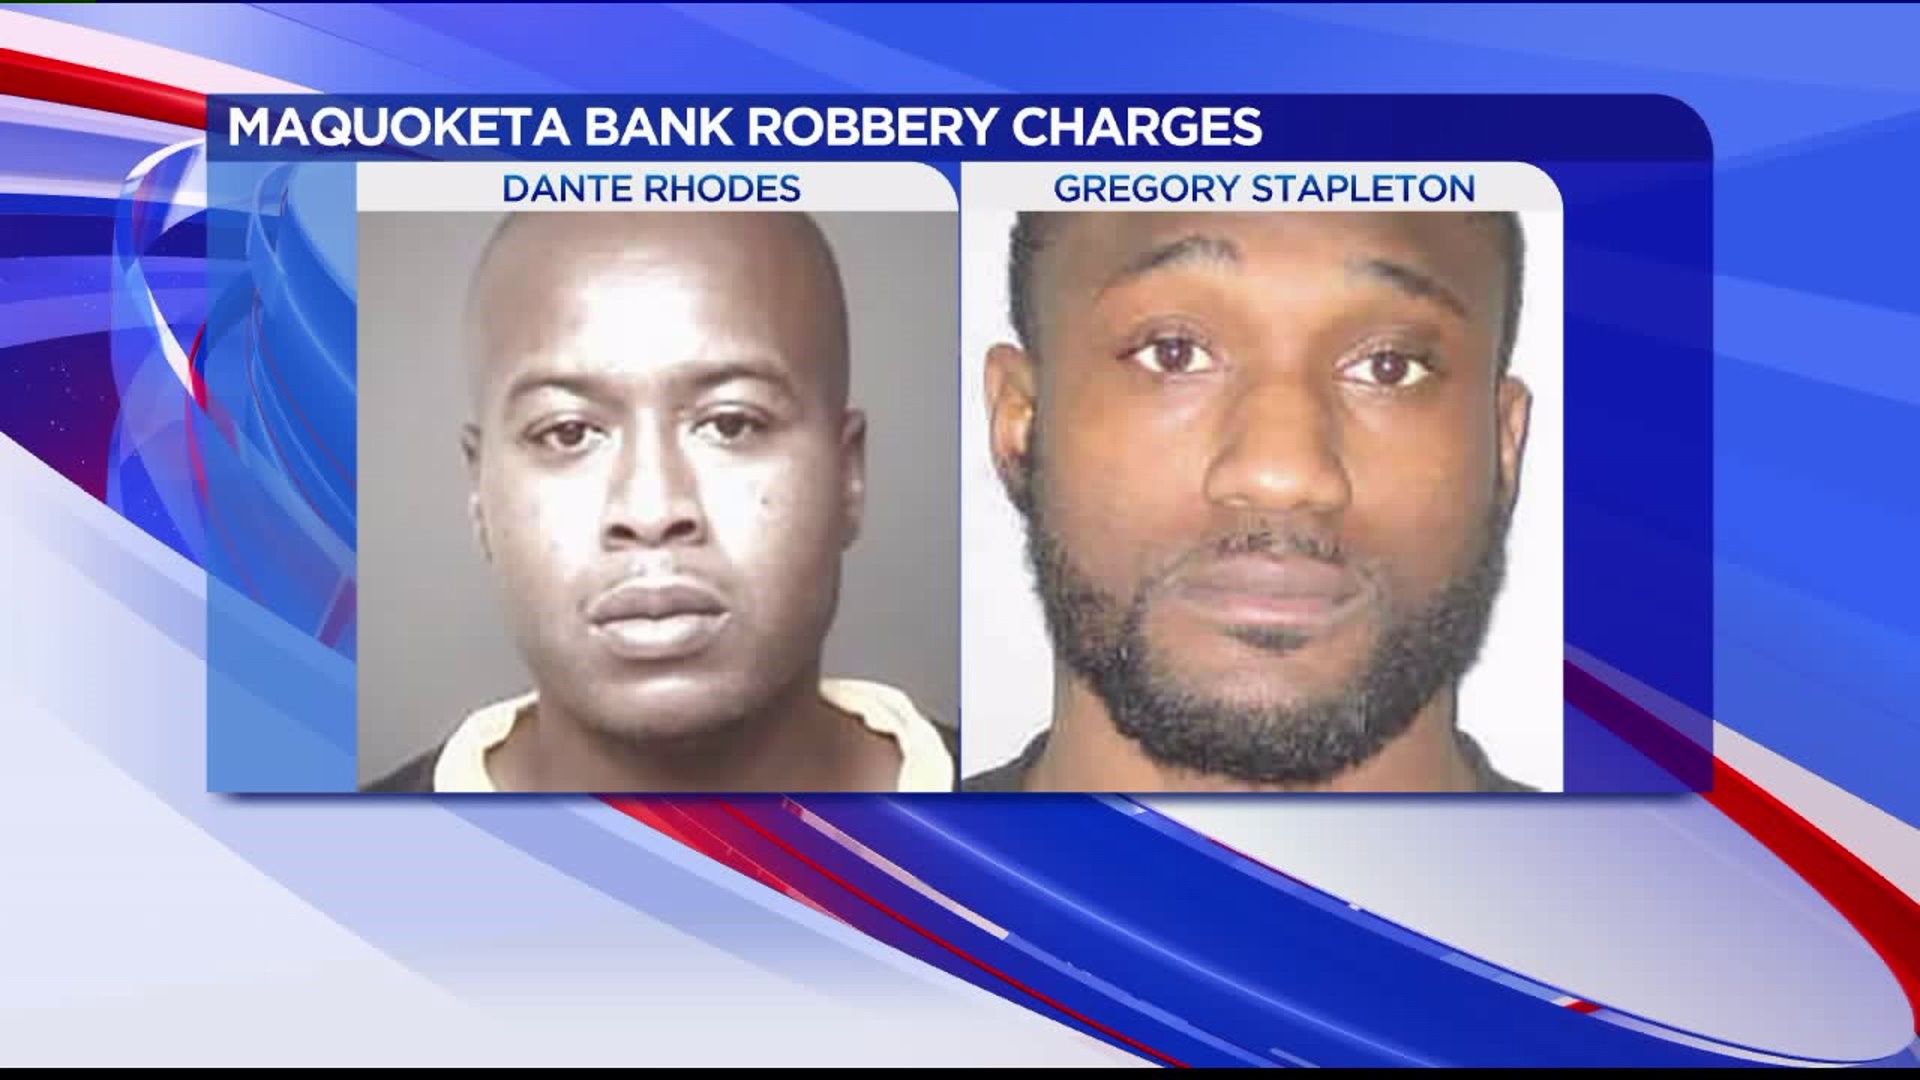 Maquoketa bank robbery